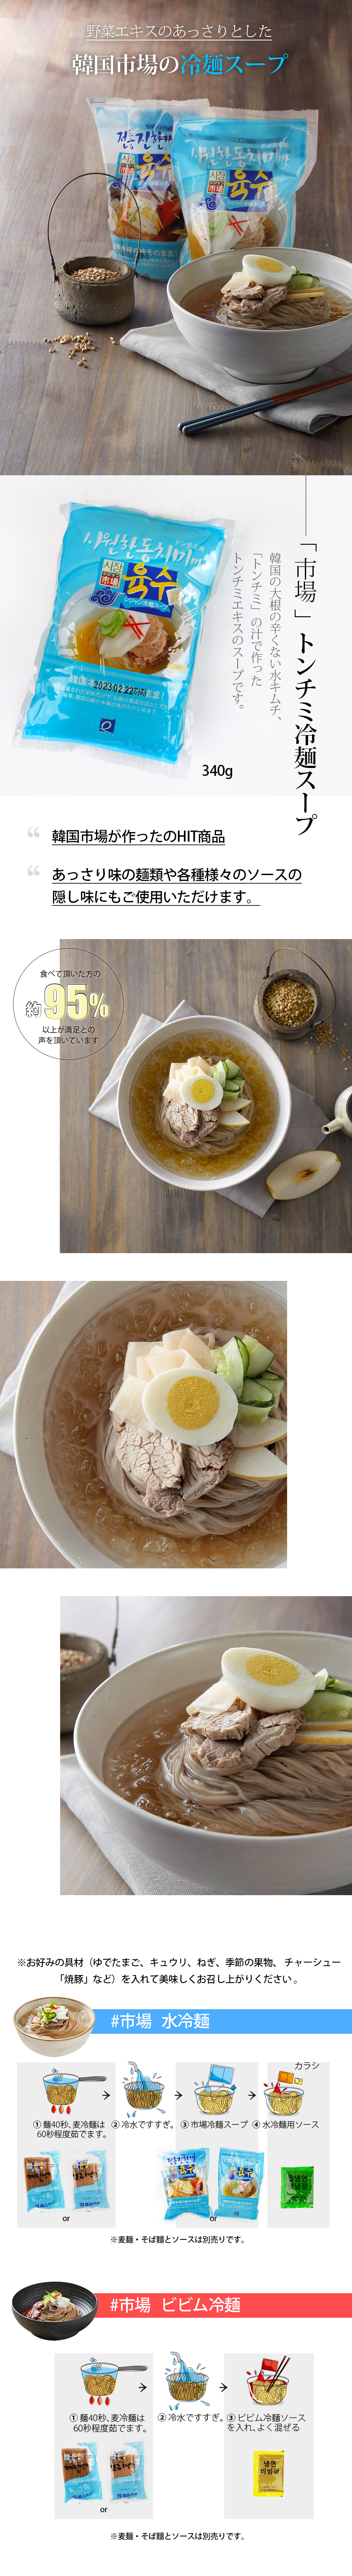 市場冷麺スープ(ドンチミ味)